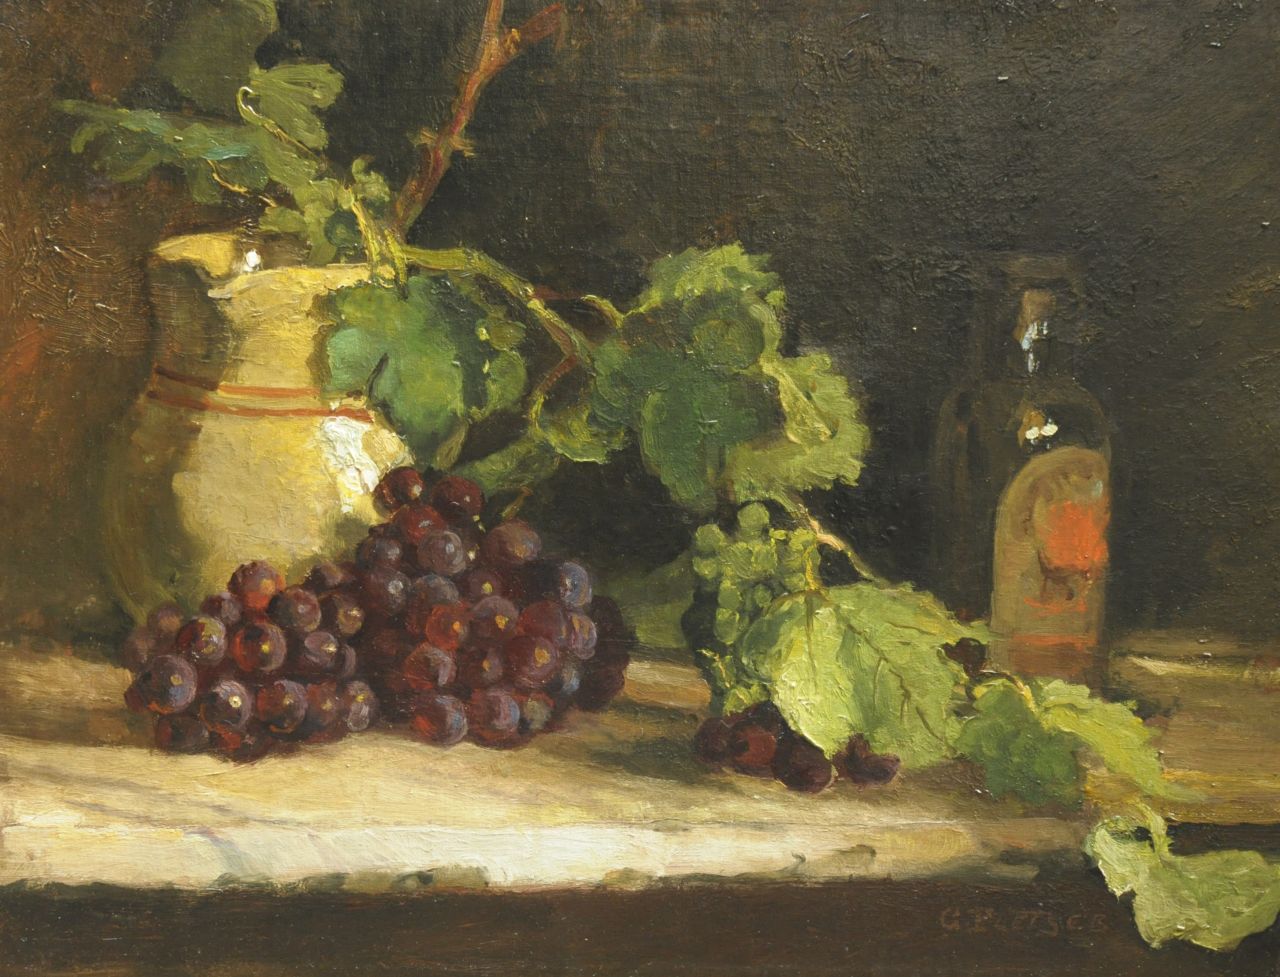 George Pletser | A still life with grapes, Öl auf Leinwand, 42,5 x 55,5 cm, signed l.r.